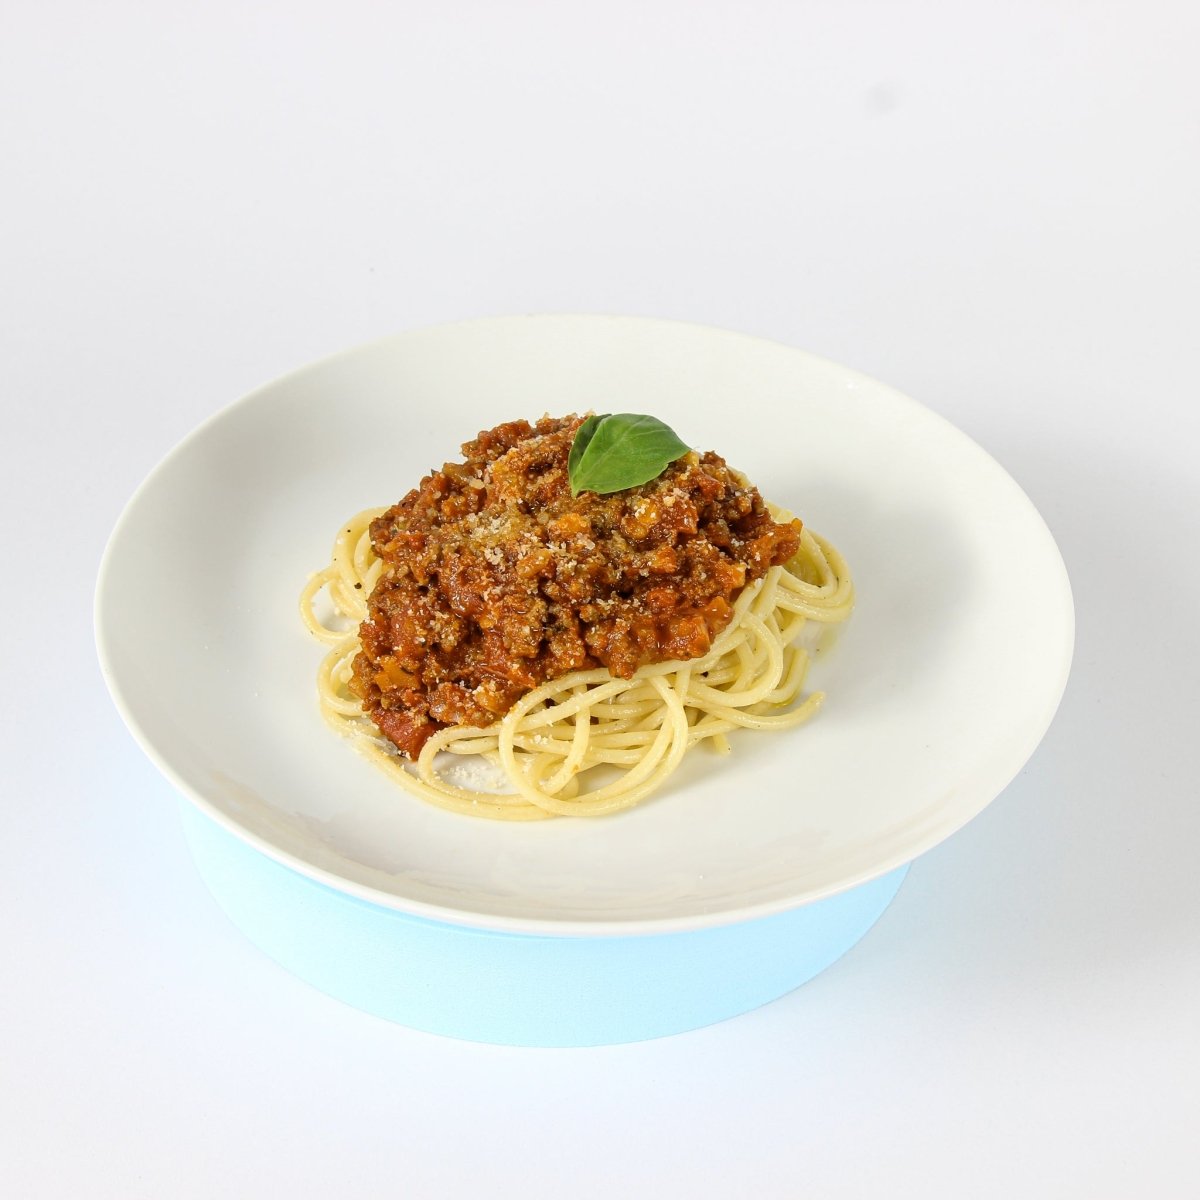 Hidden Vegetable Spaghetti Bolognese - The Little Lunchbox